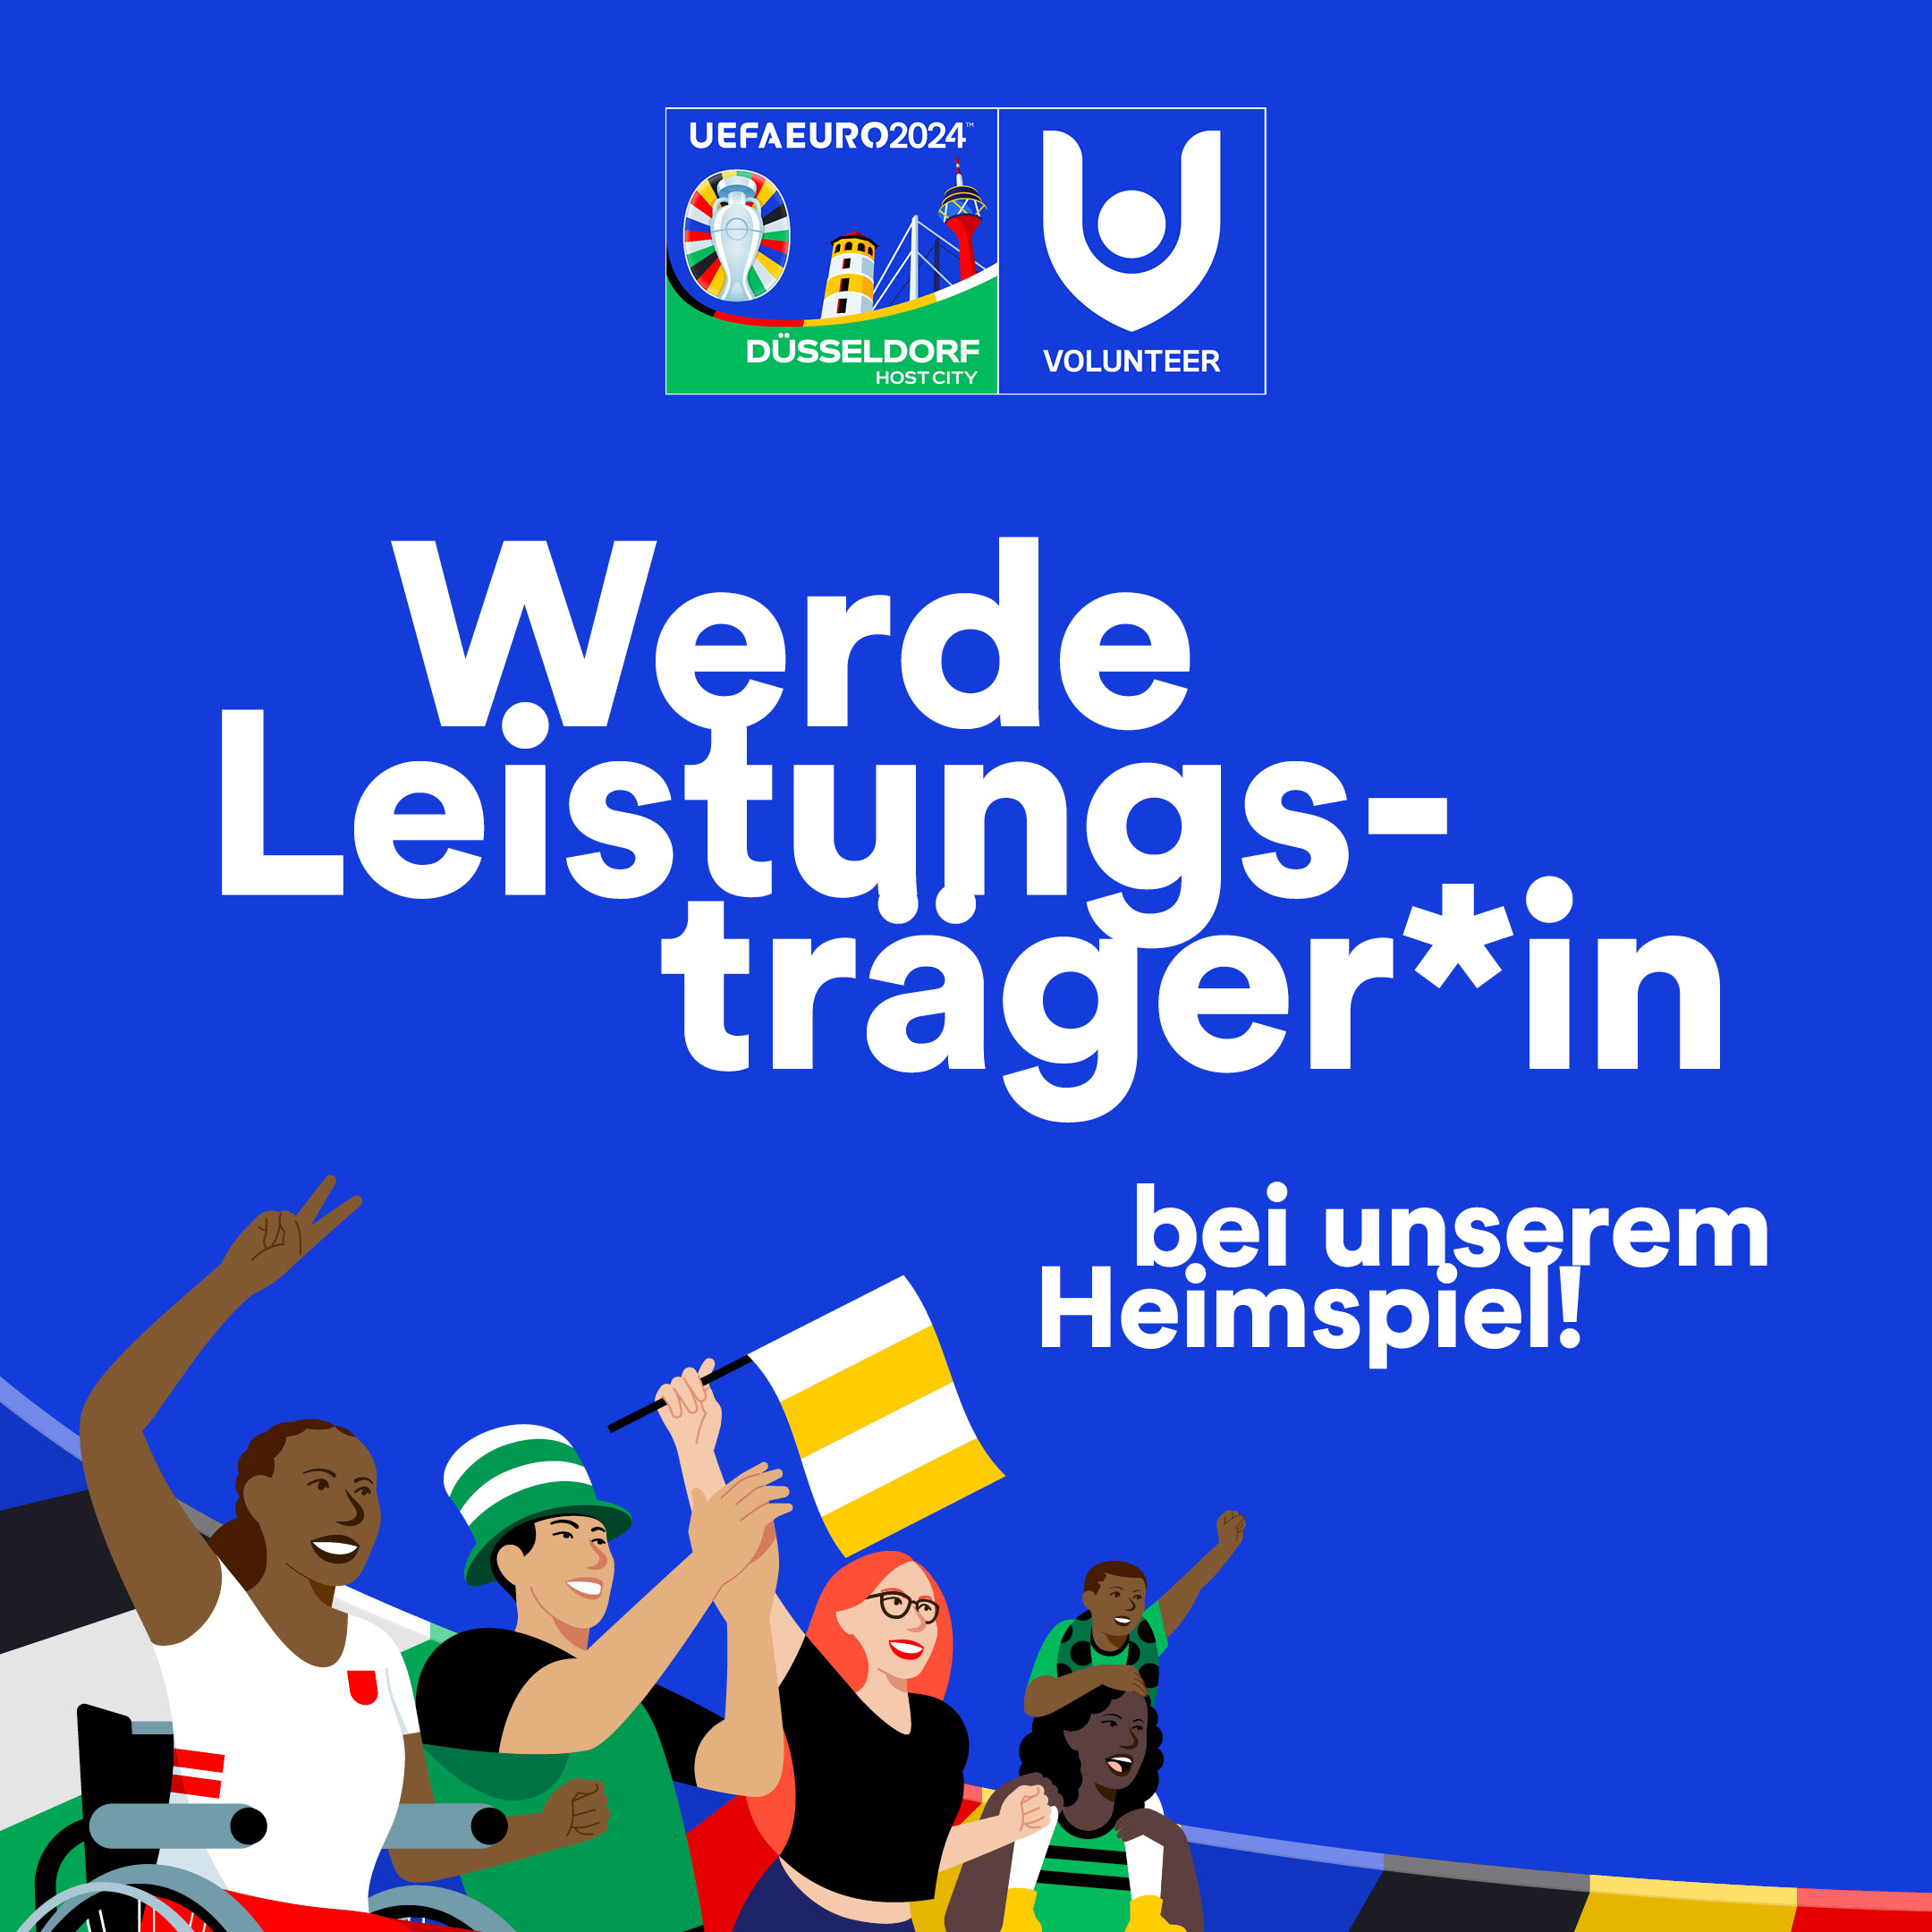 Volunteers für die UEFA EURO 2024 gesucht! Landeshauptstadt Düsseldorf